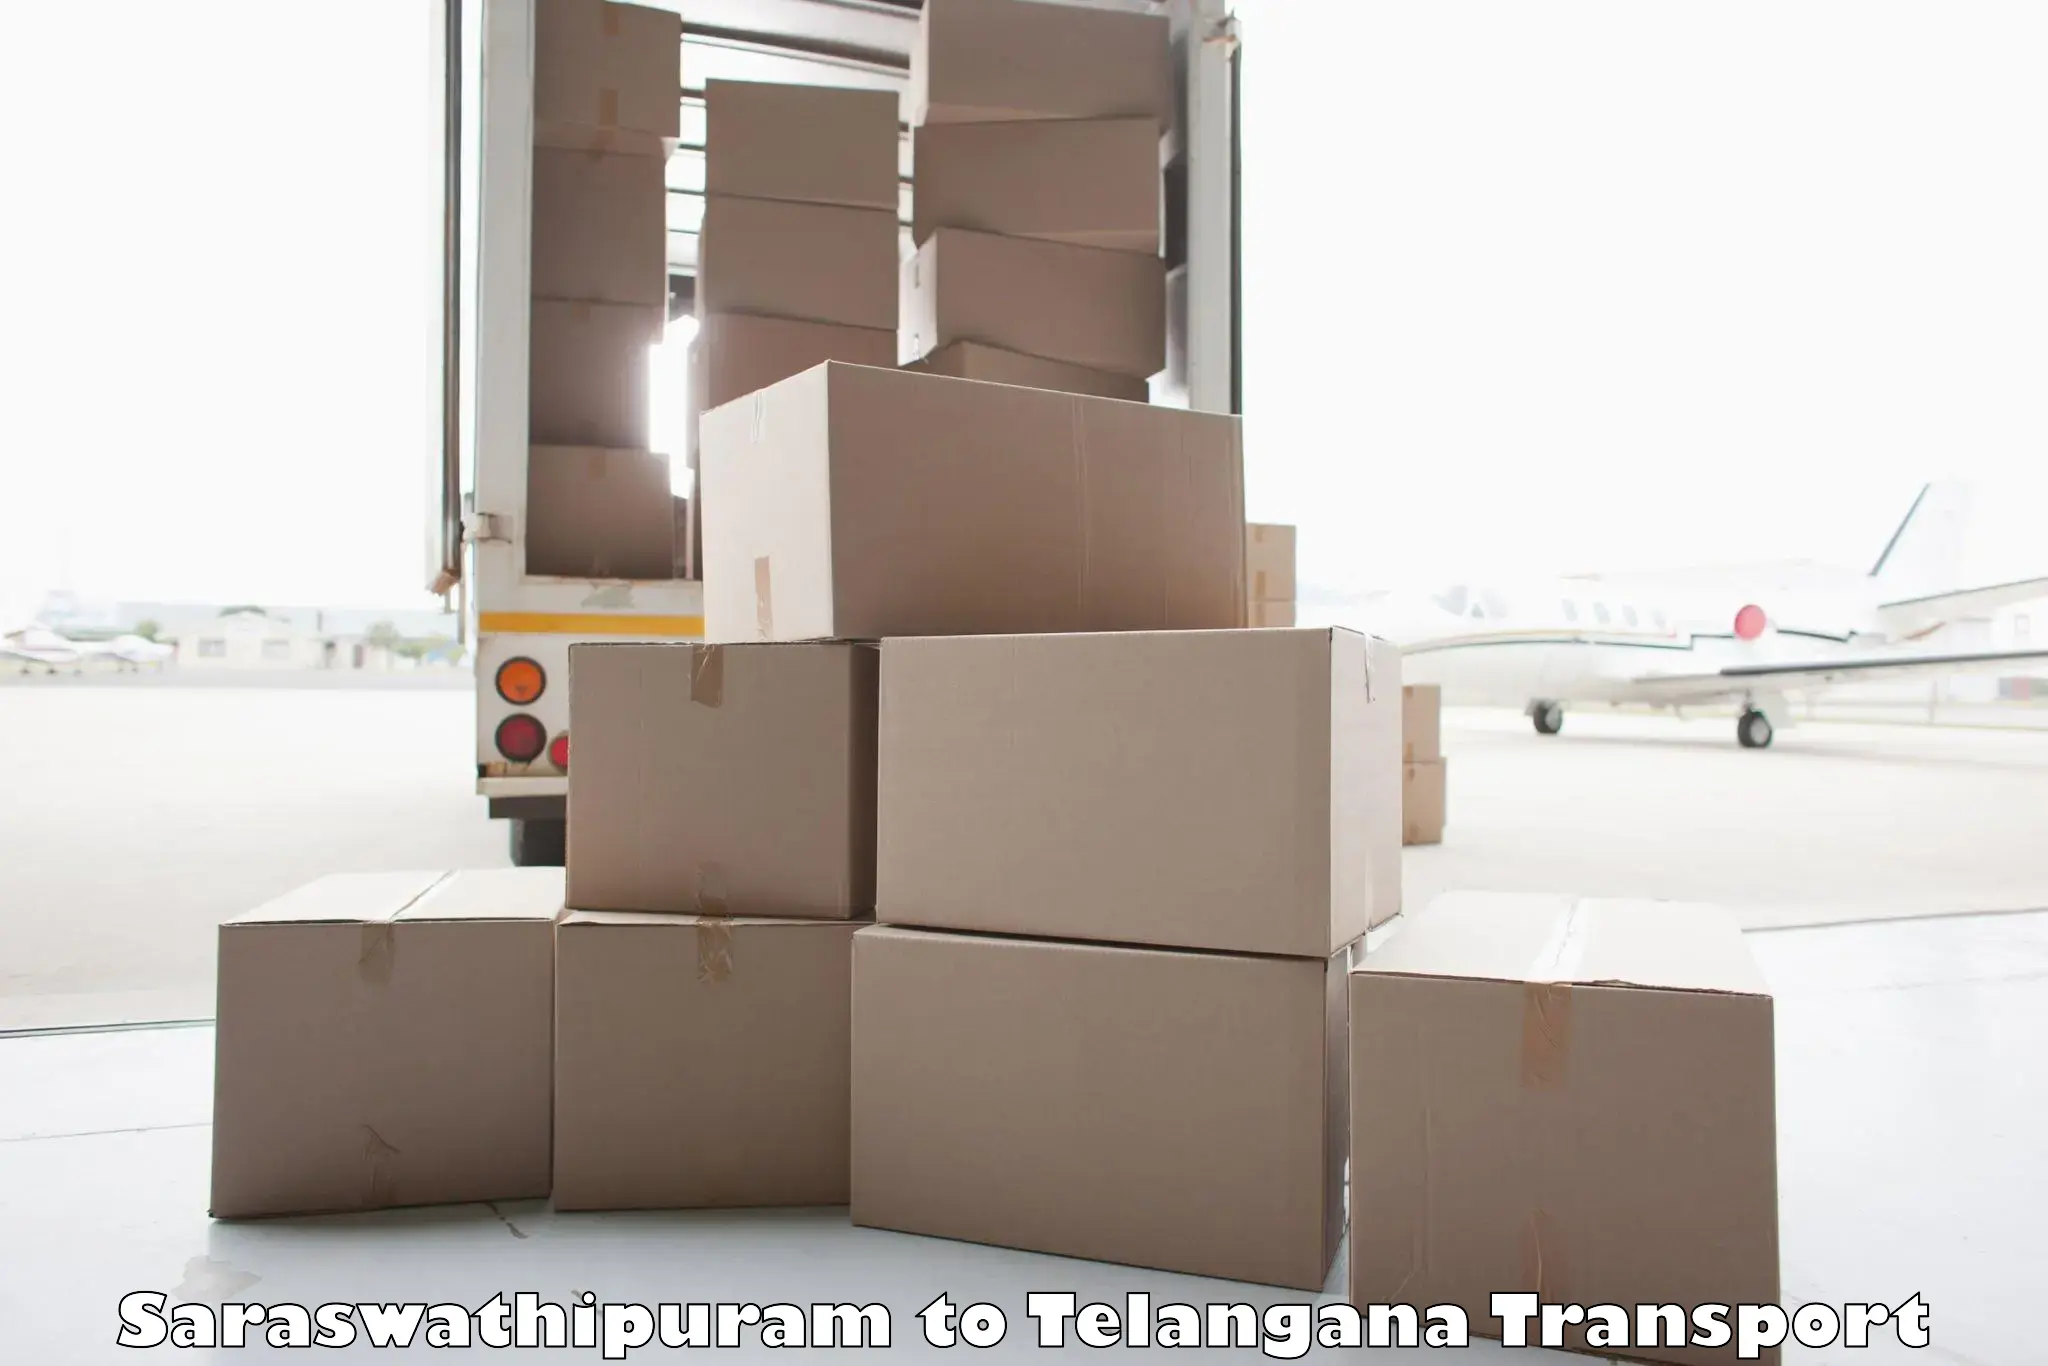 Interstate transport services Saraswathipuram to Telangana